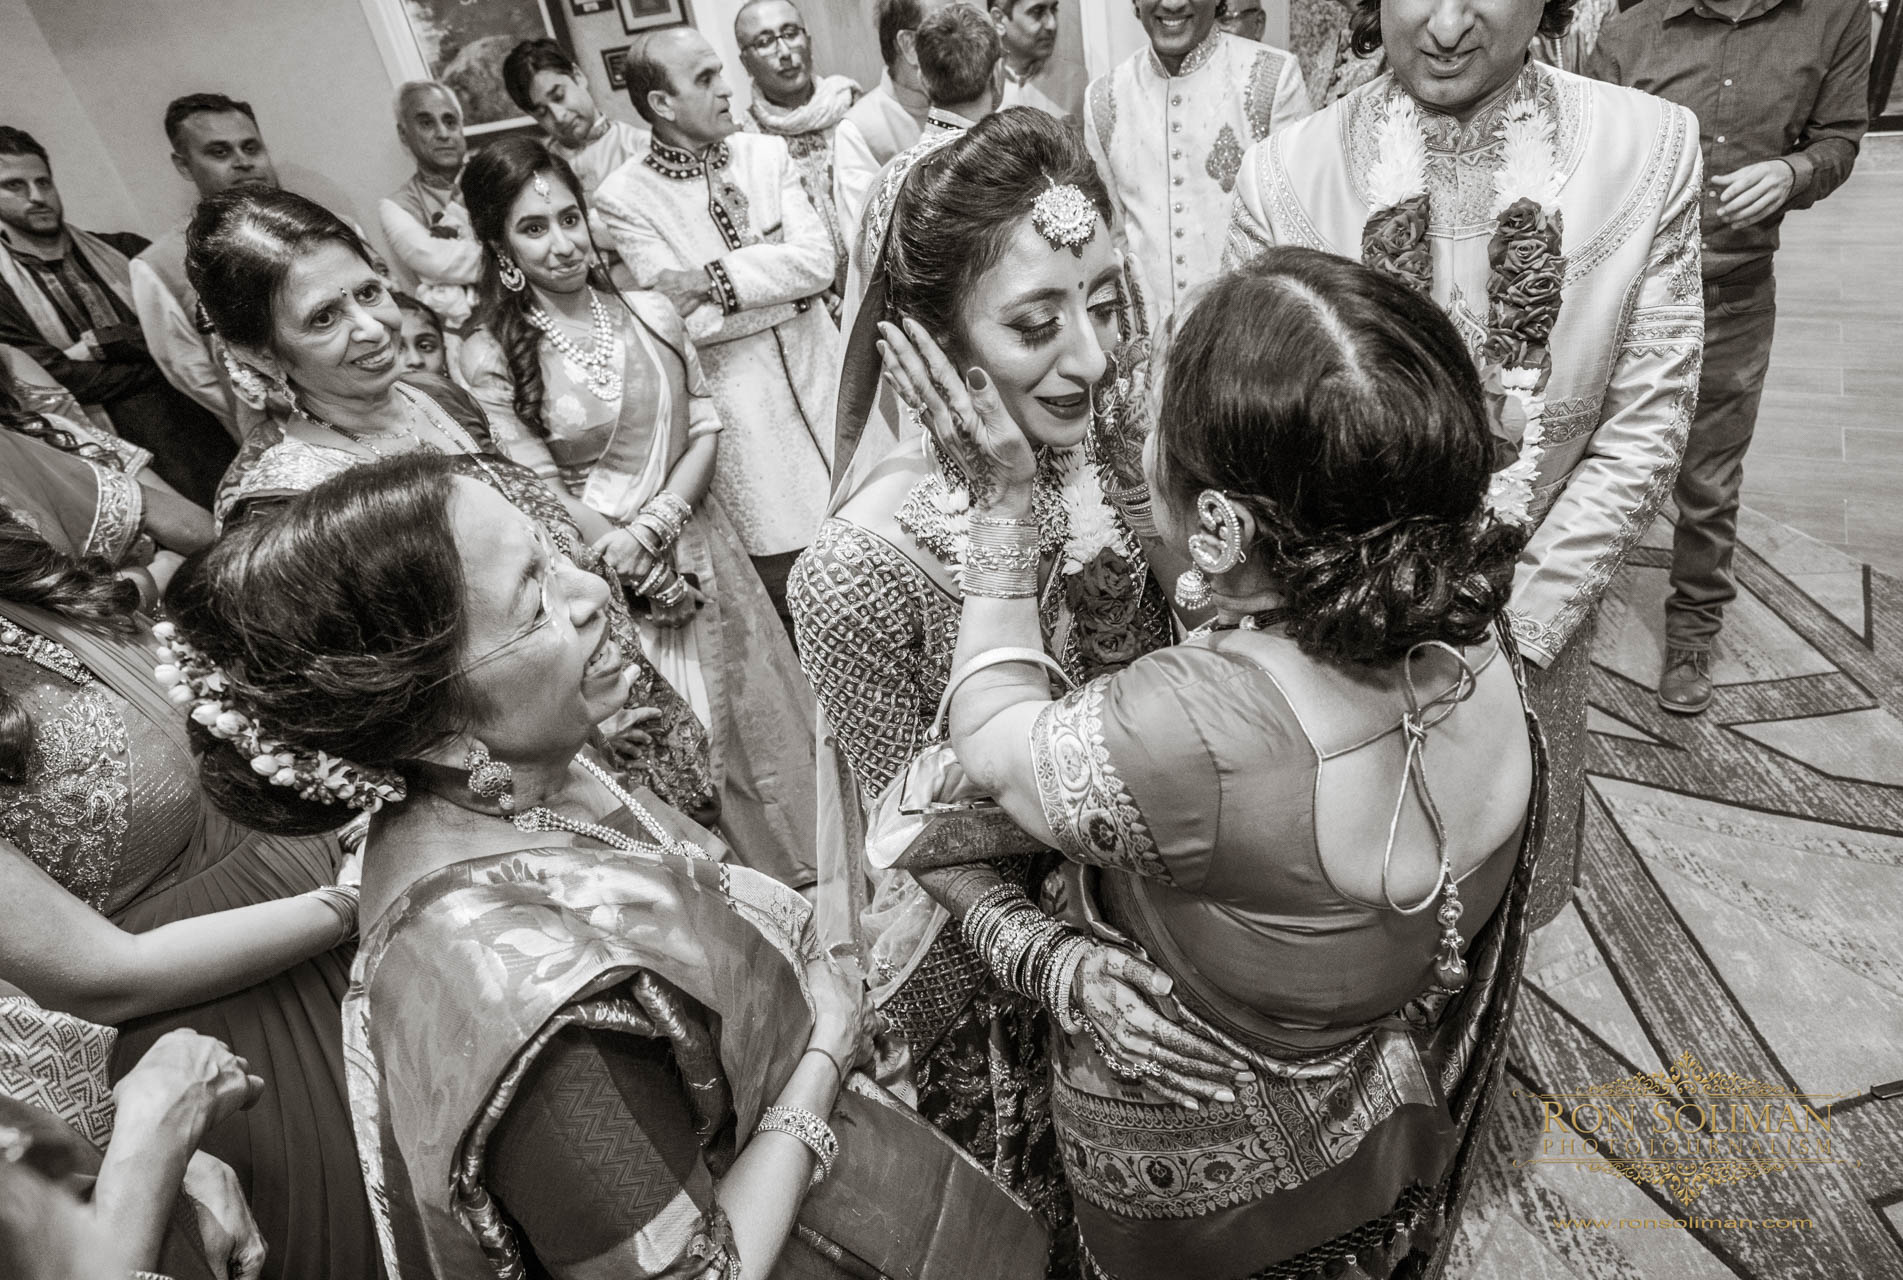 SHERATON MAHWAH INDIAN WEDDING 15